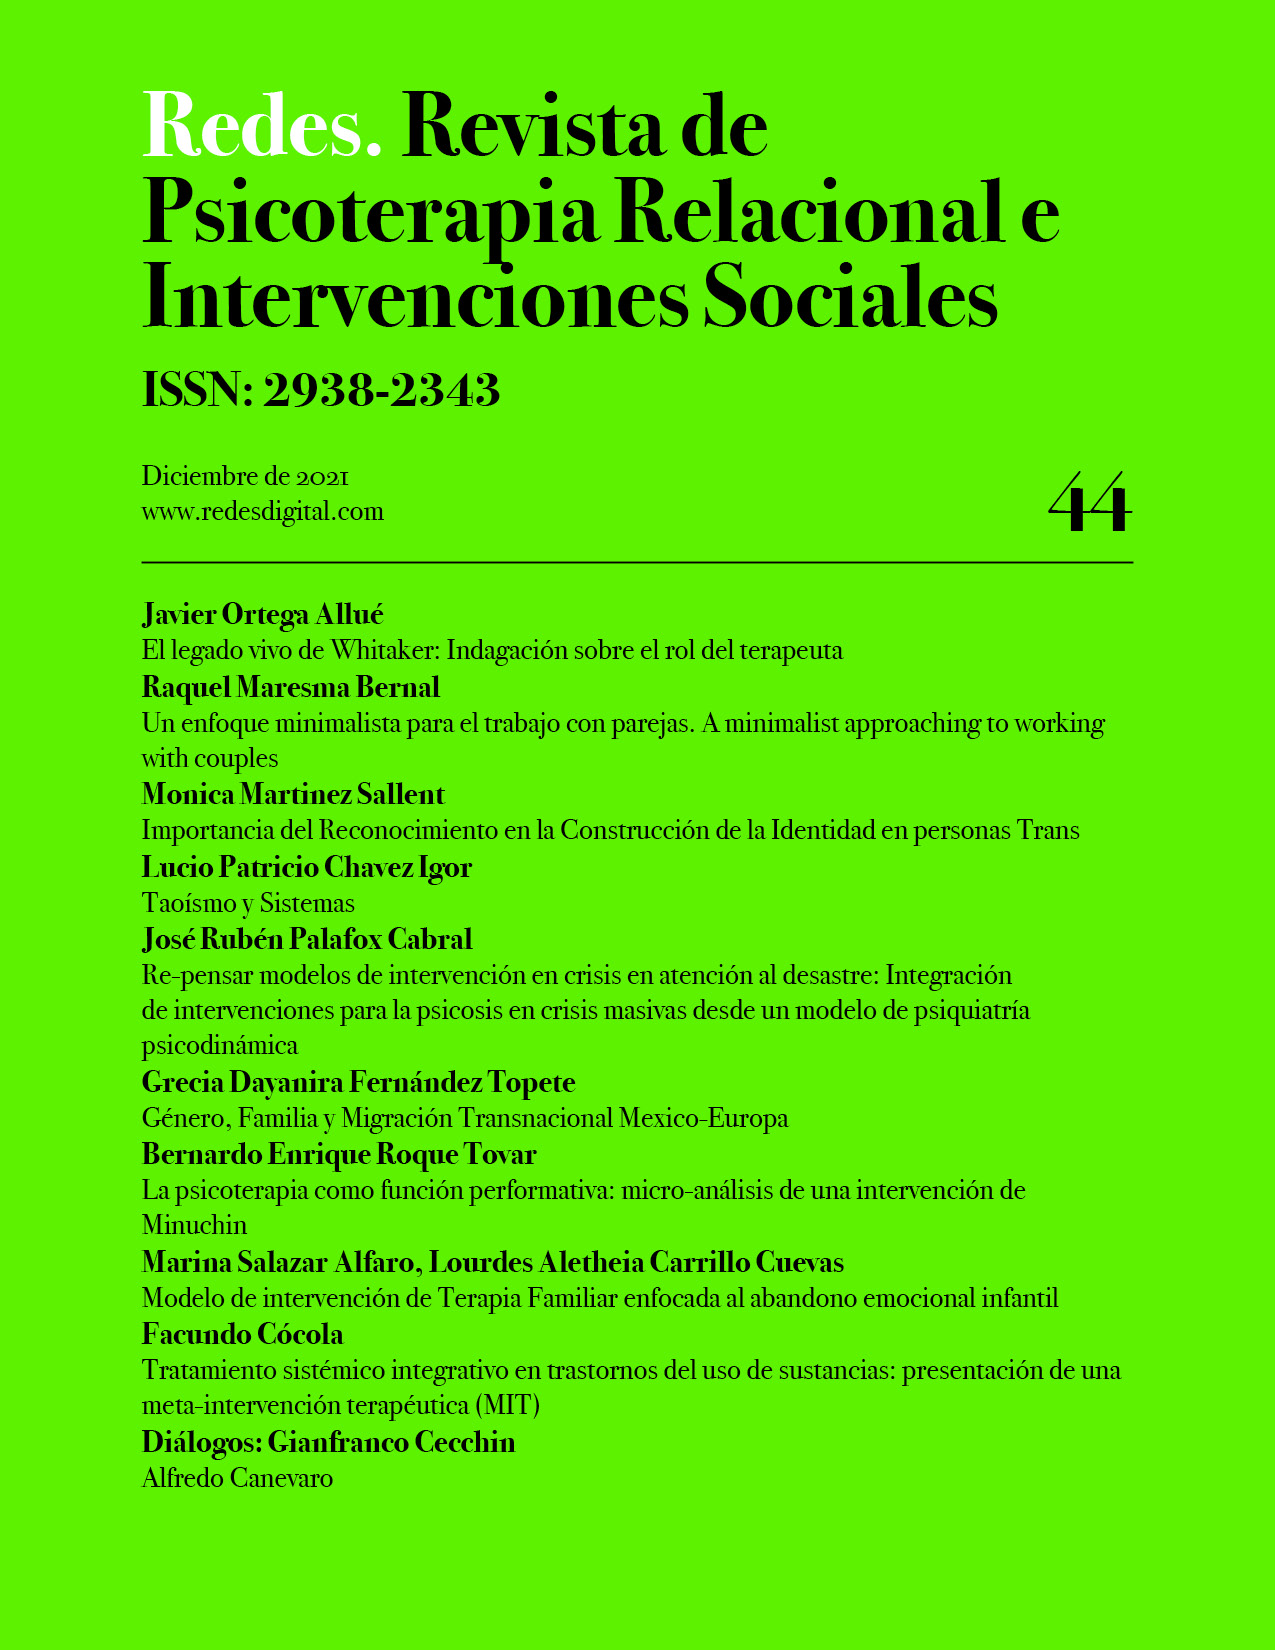 					Ver Núm. 44 (2021): Redes. Revista de Psicoterapia Relacional e Intervenciones Sociales. Diciembre, 2021
				